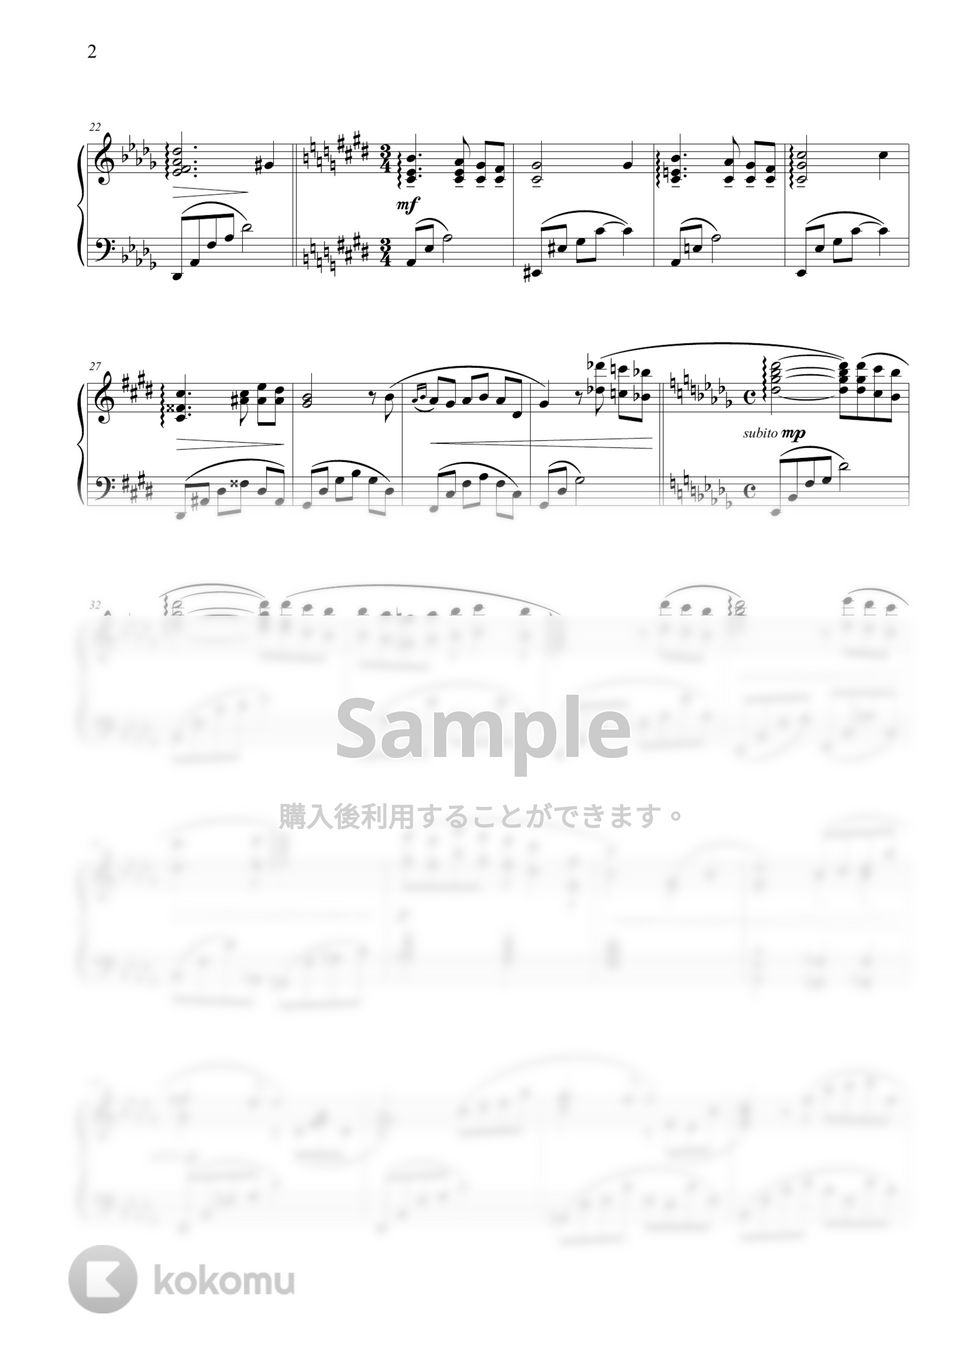 久石譲 - Nostalgia by THIS IS PIANO